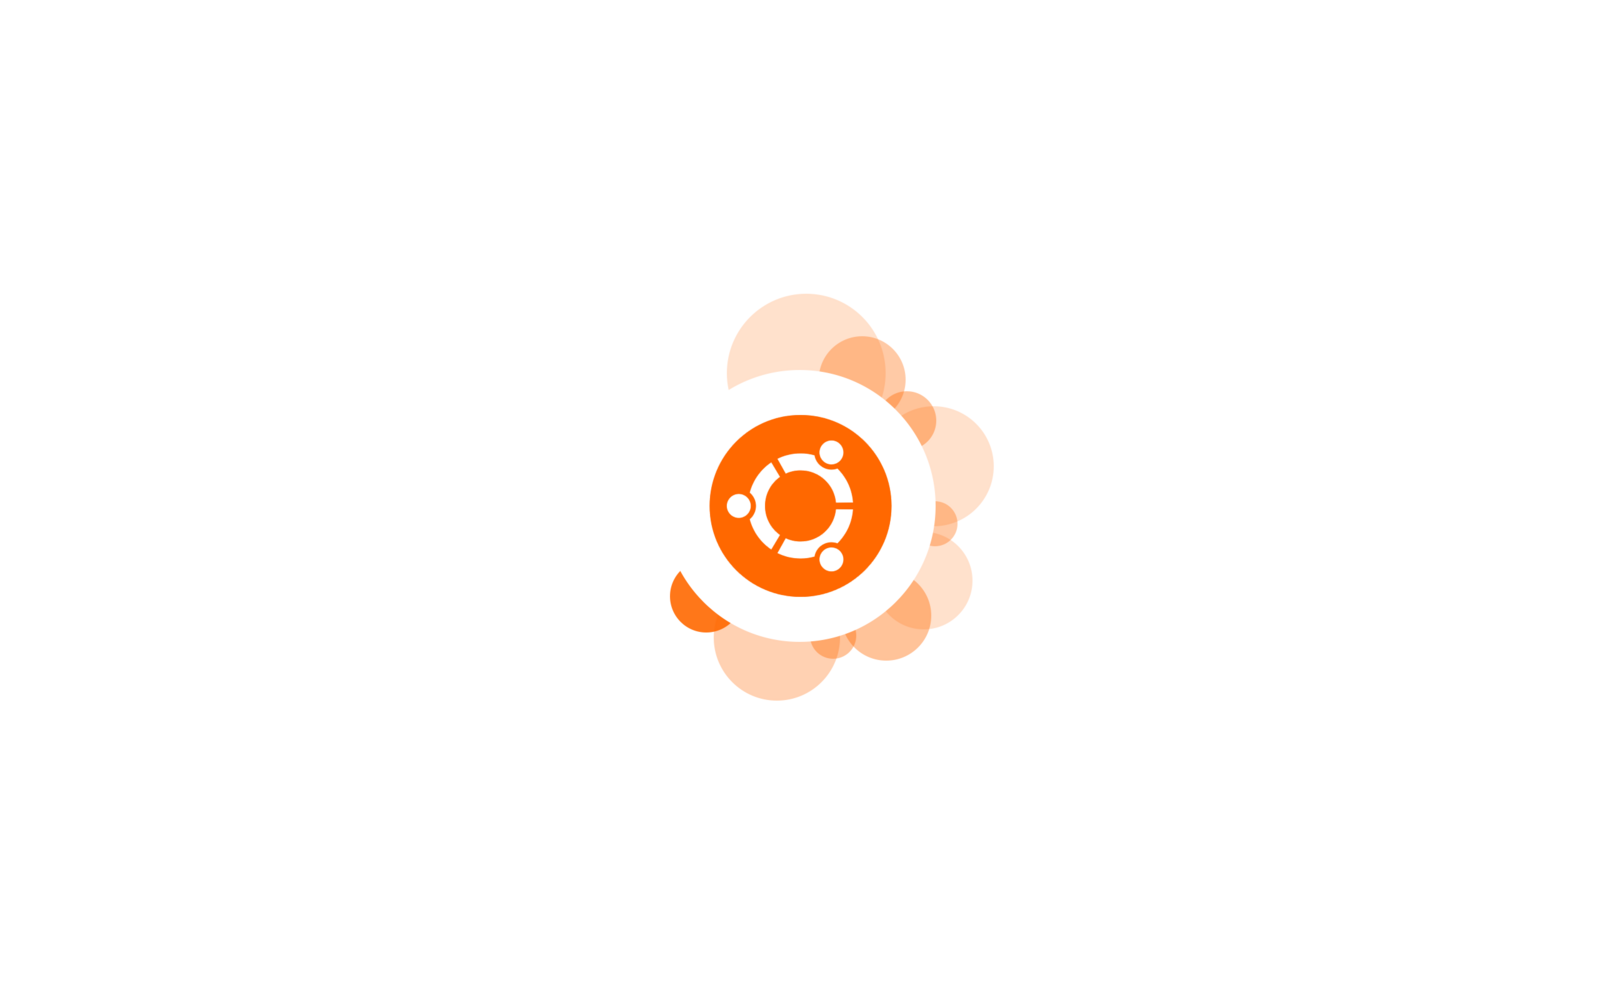 Free photo Ubuntu logo on white background